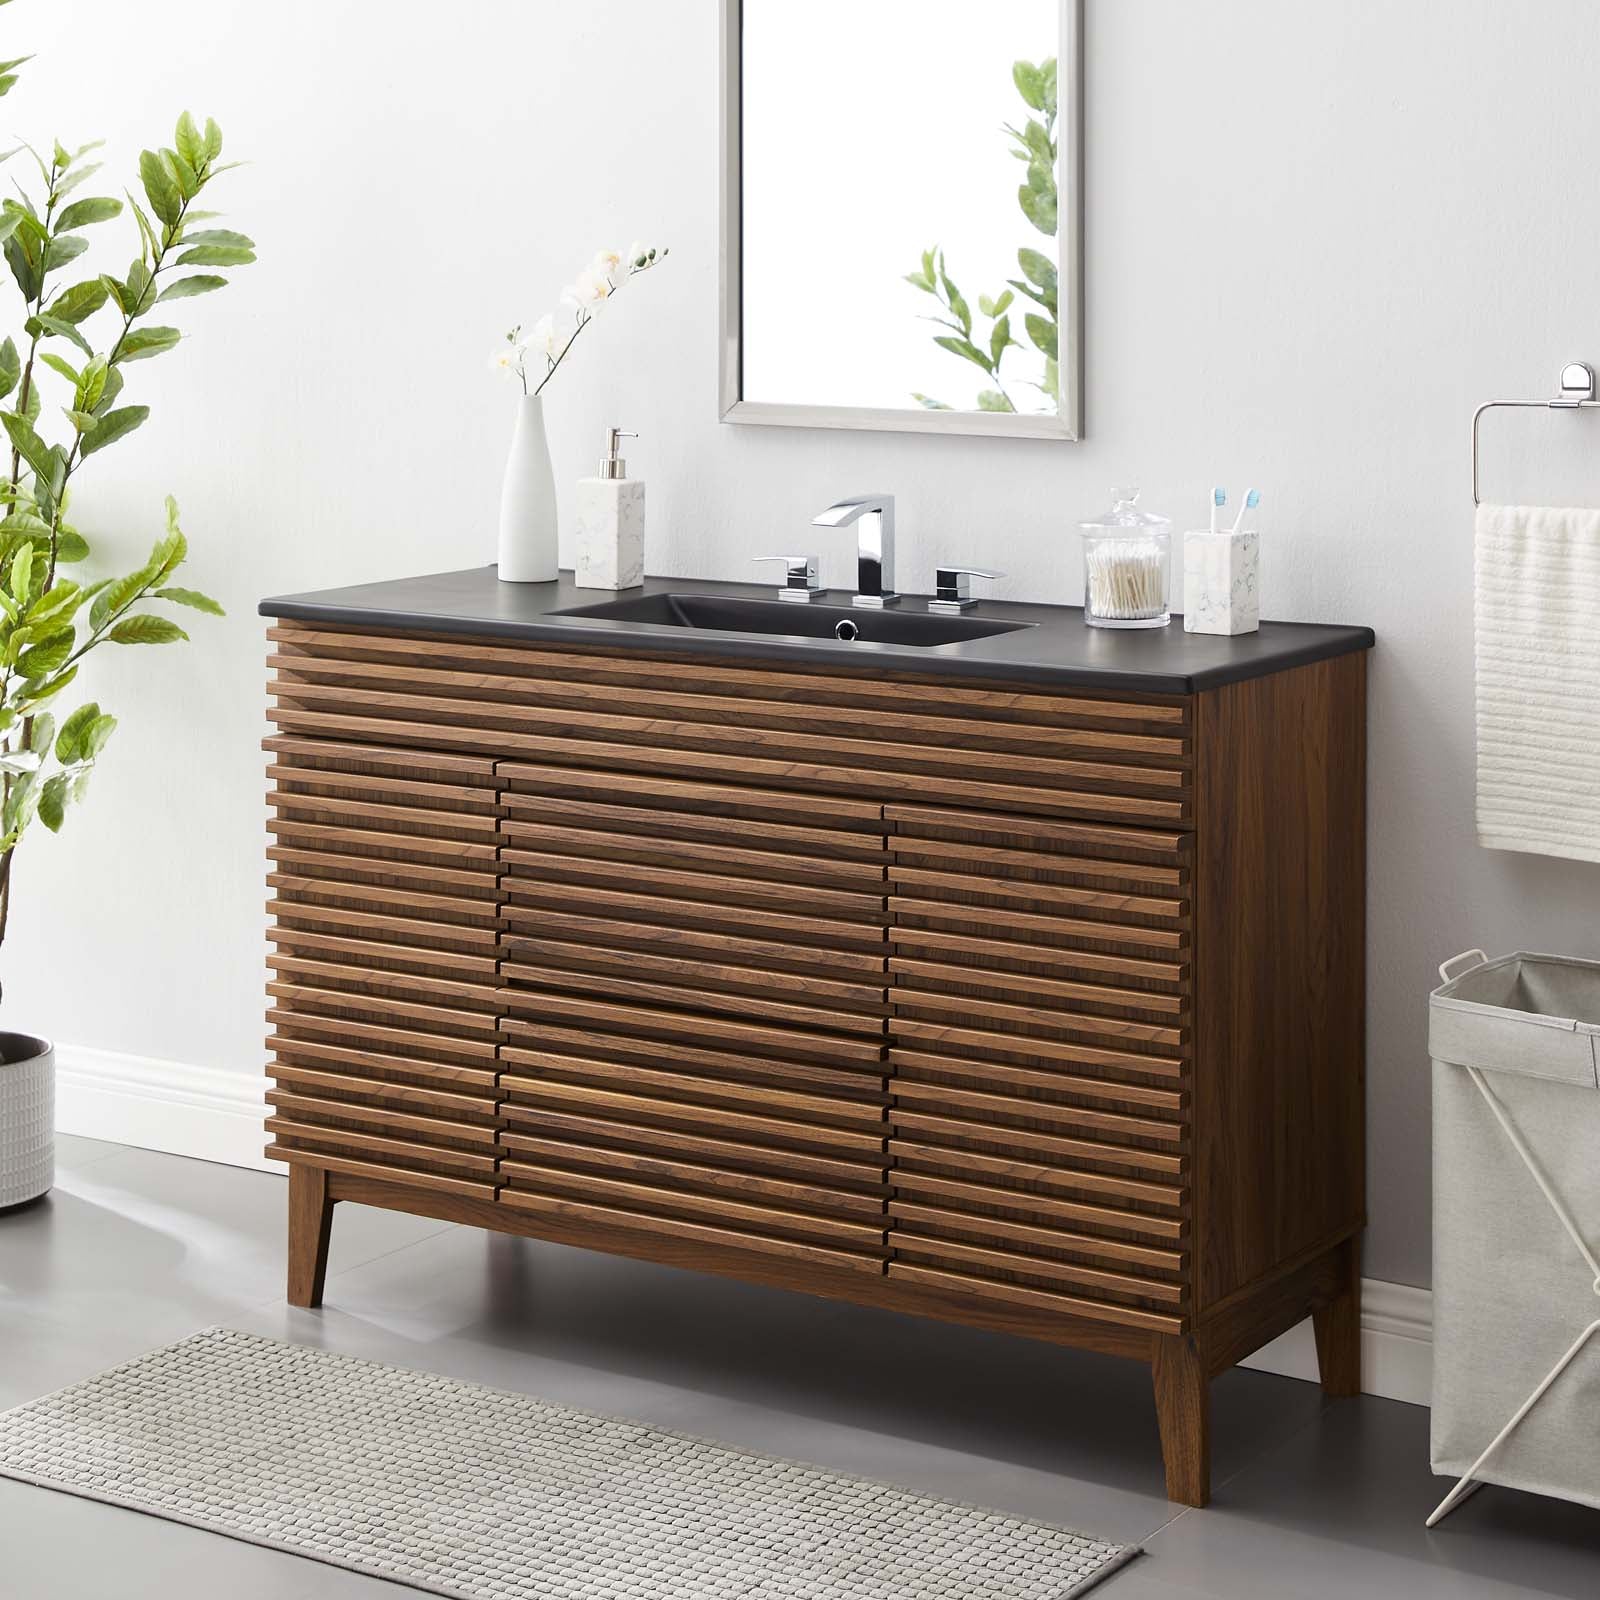 Render 48" Single Sink Bathroom Vanity - East Shore Modern Home Furnishings